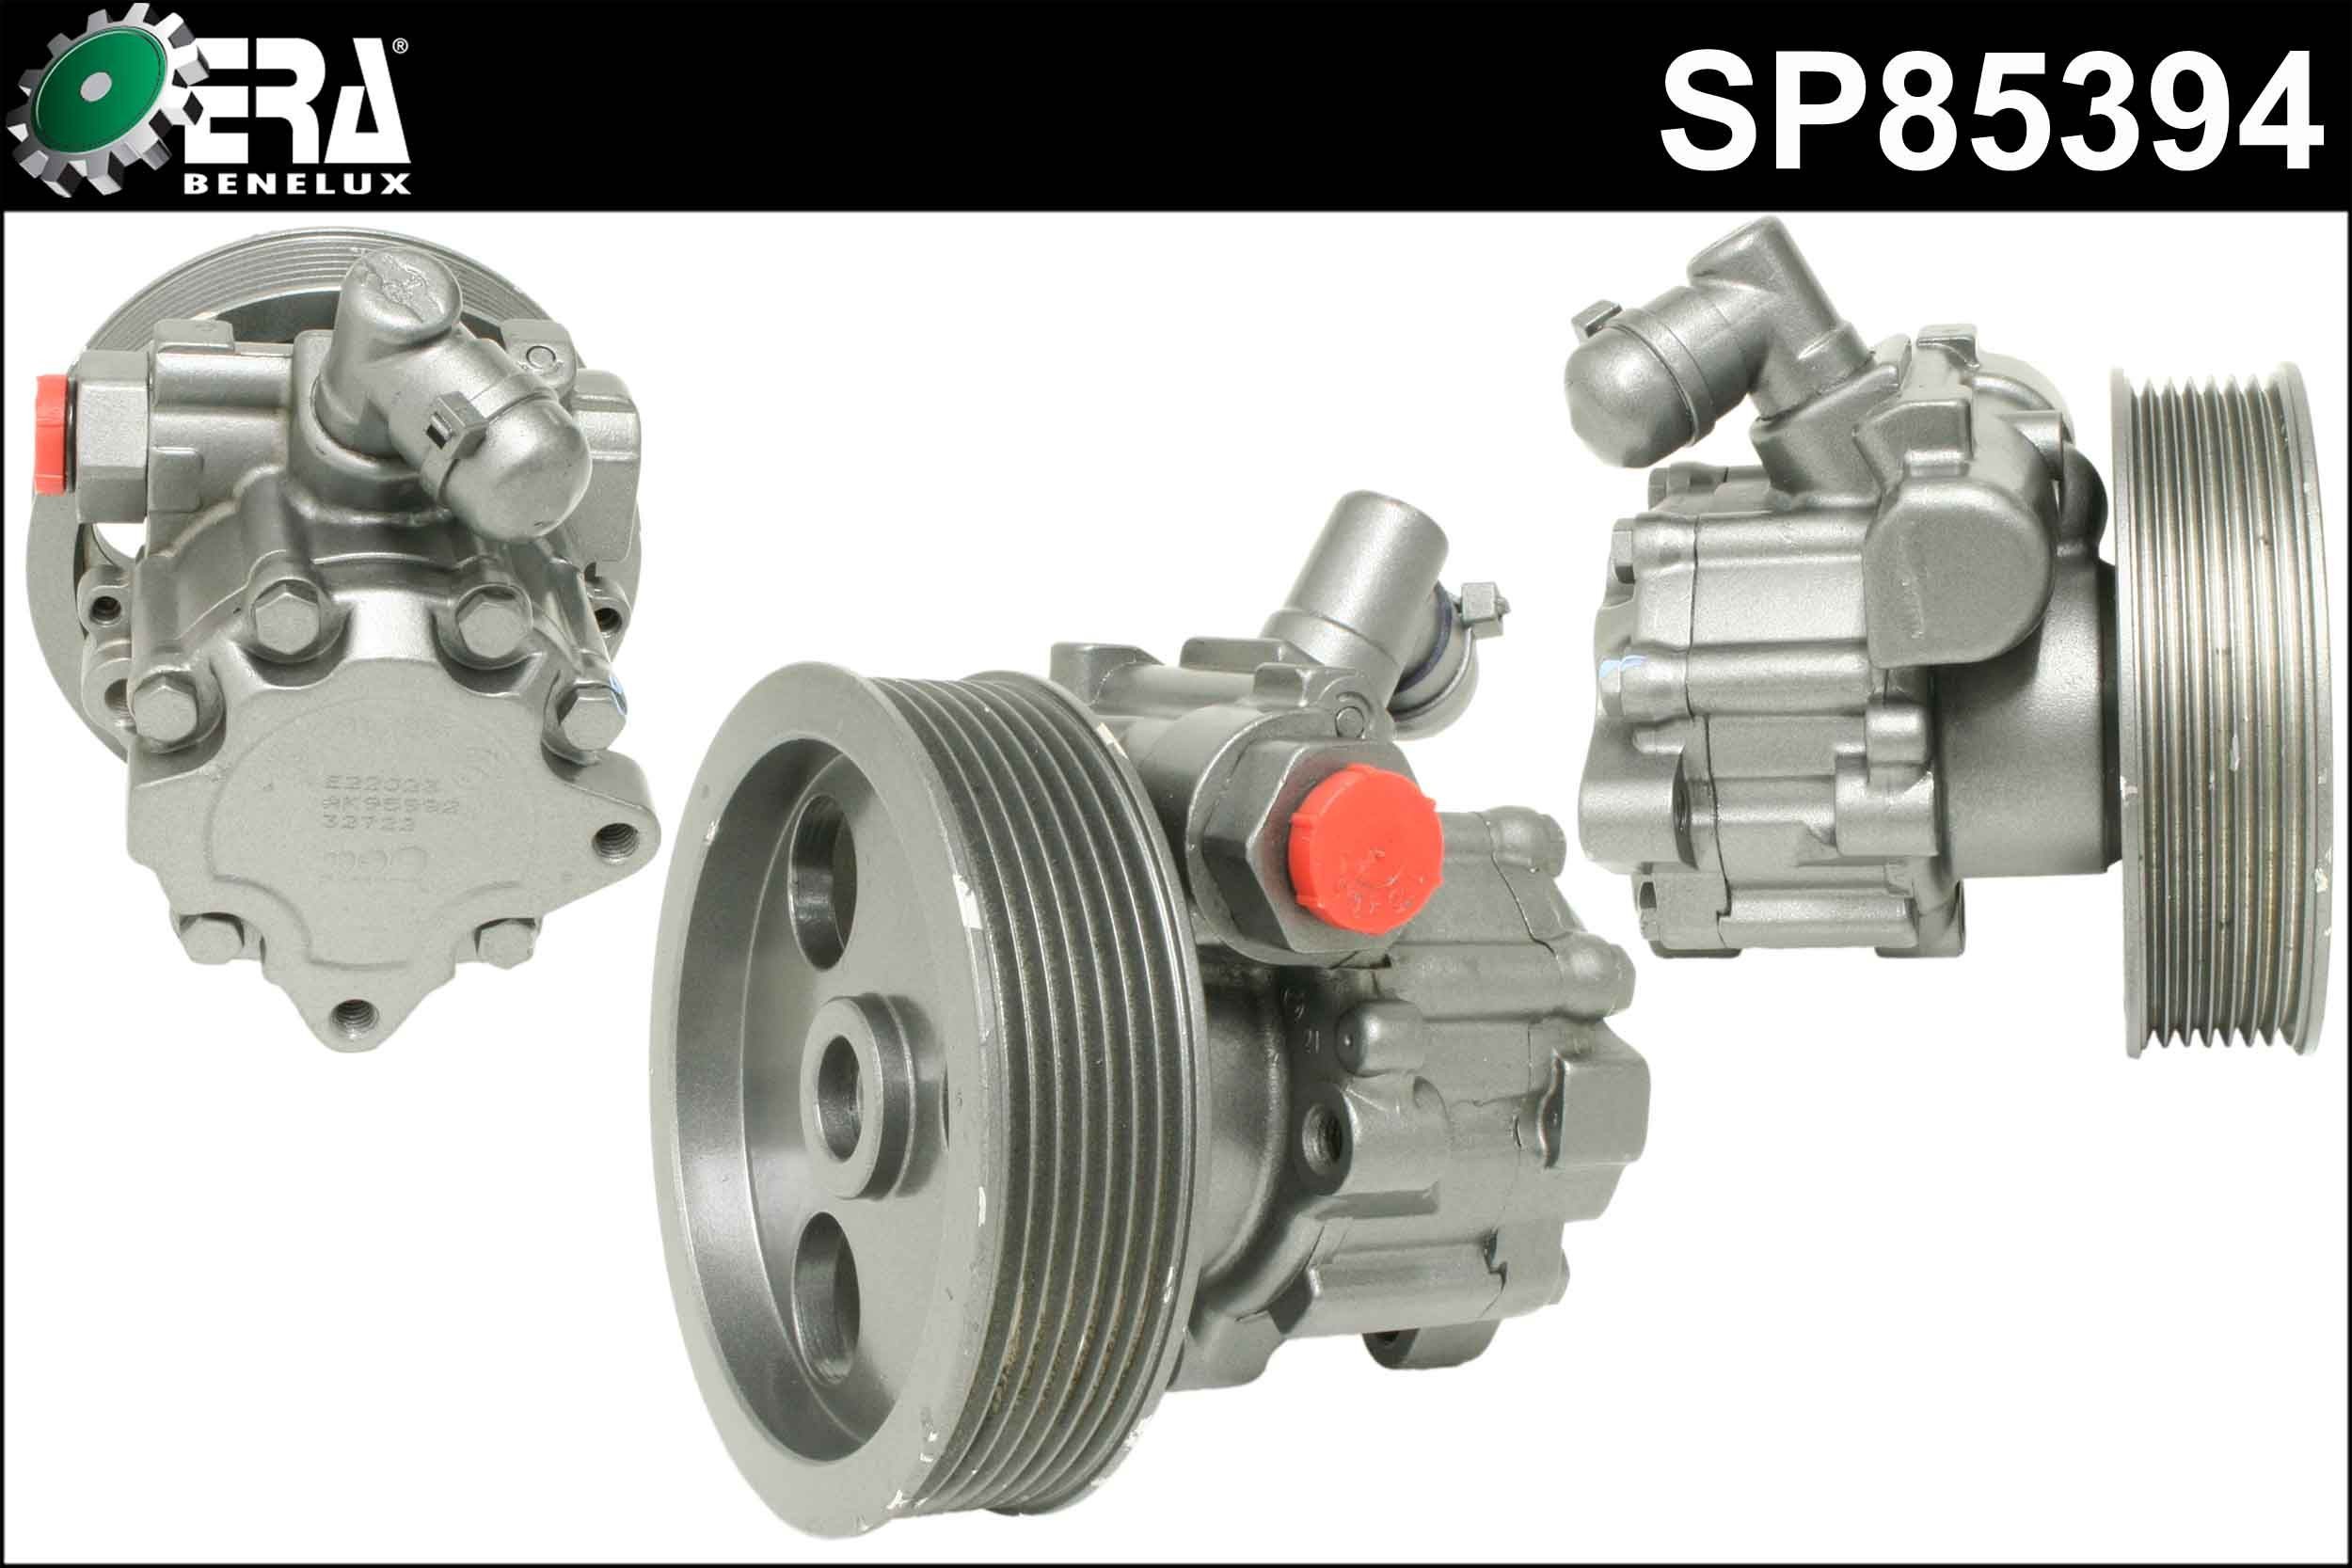 ERA Benelux SP85394 Power steering pump